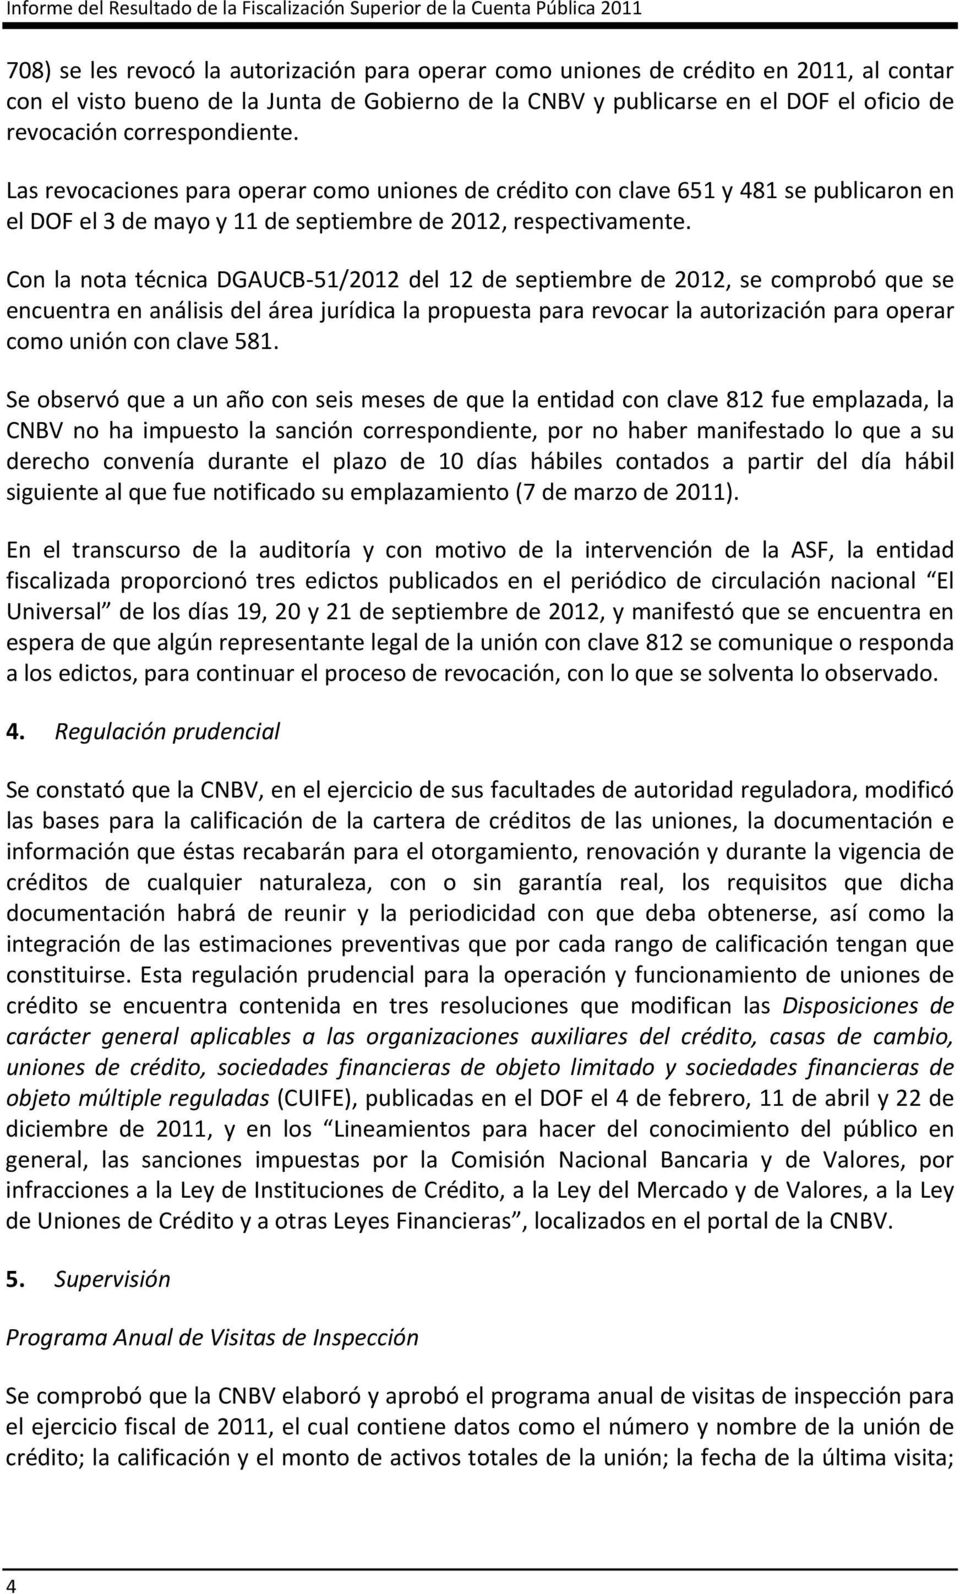 Las revocaciones para operar como uniones de crédito con clave 651 y 481 se publicaron en el DOF el 3 de mayo y 11 de septiembre de 2012, respectivamente.